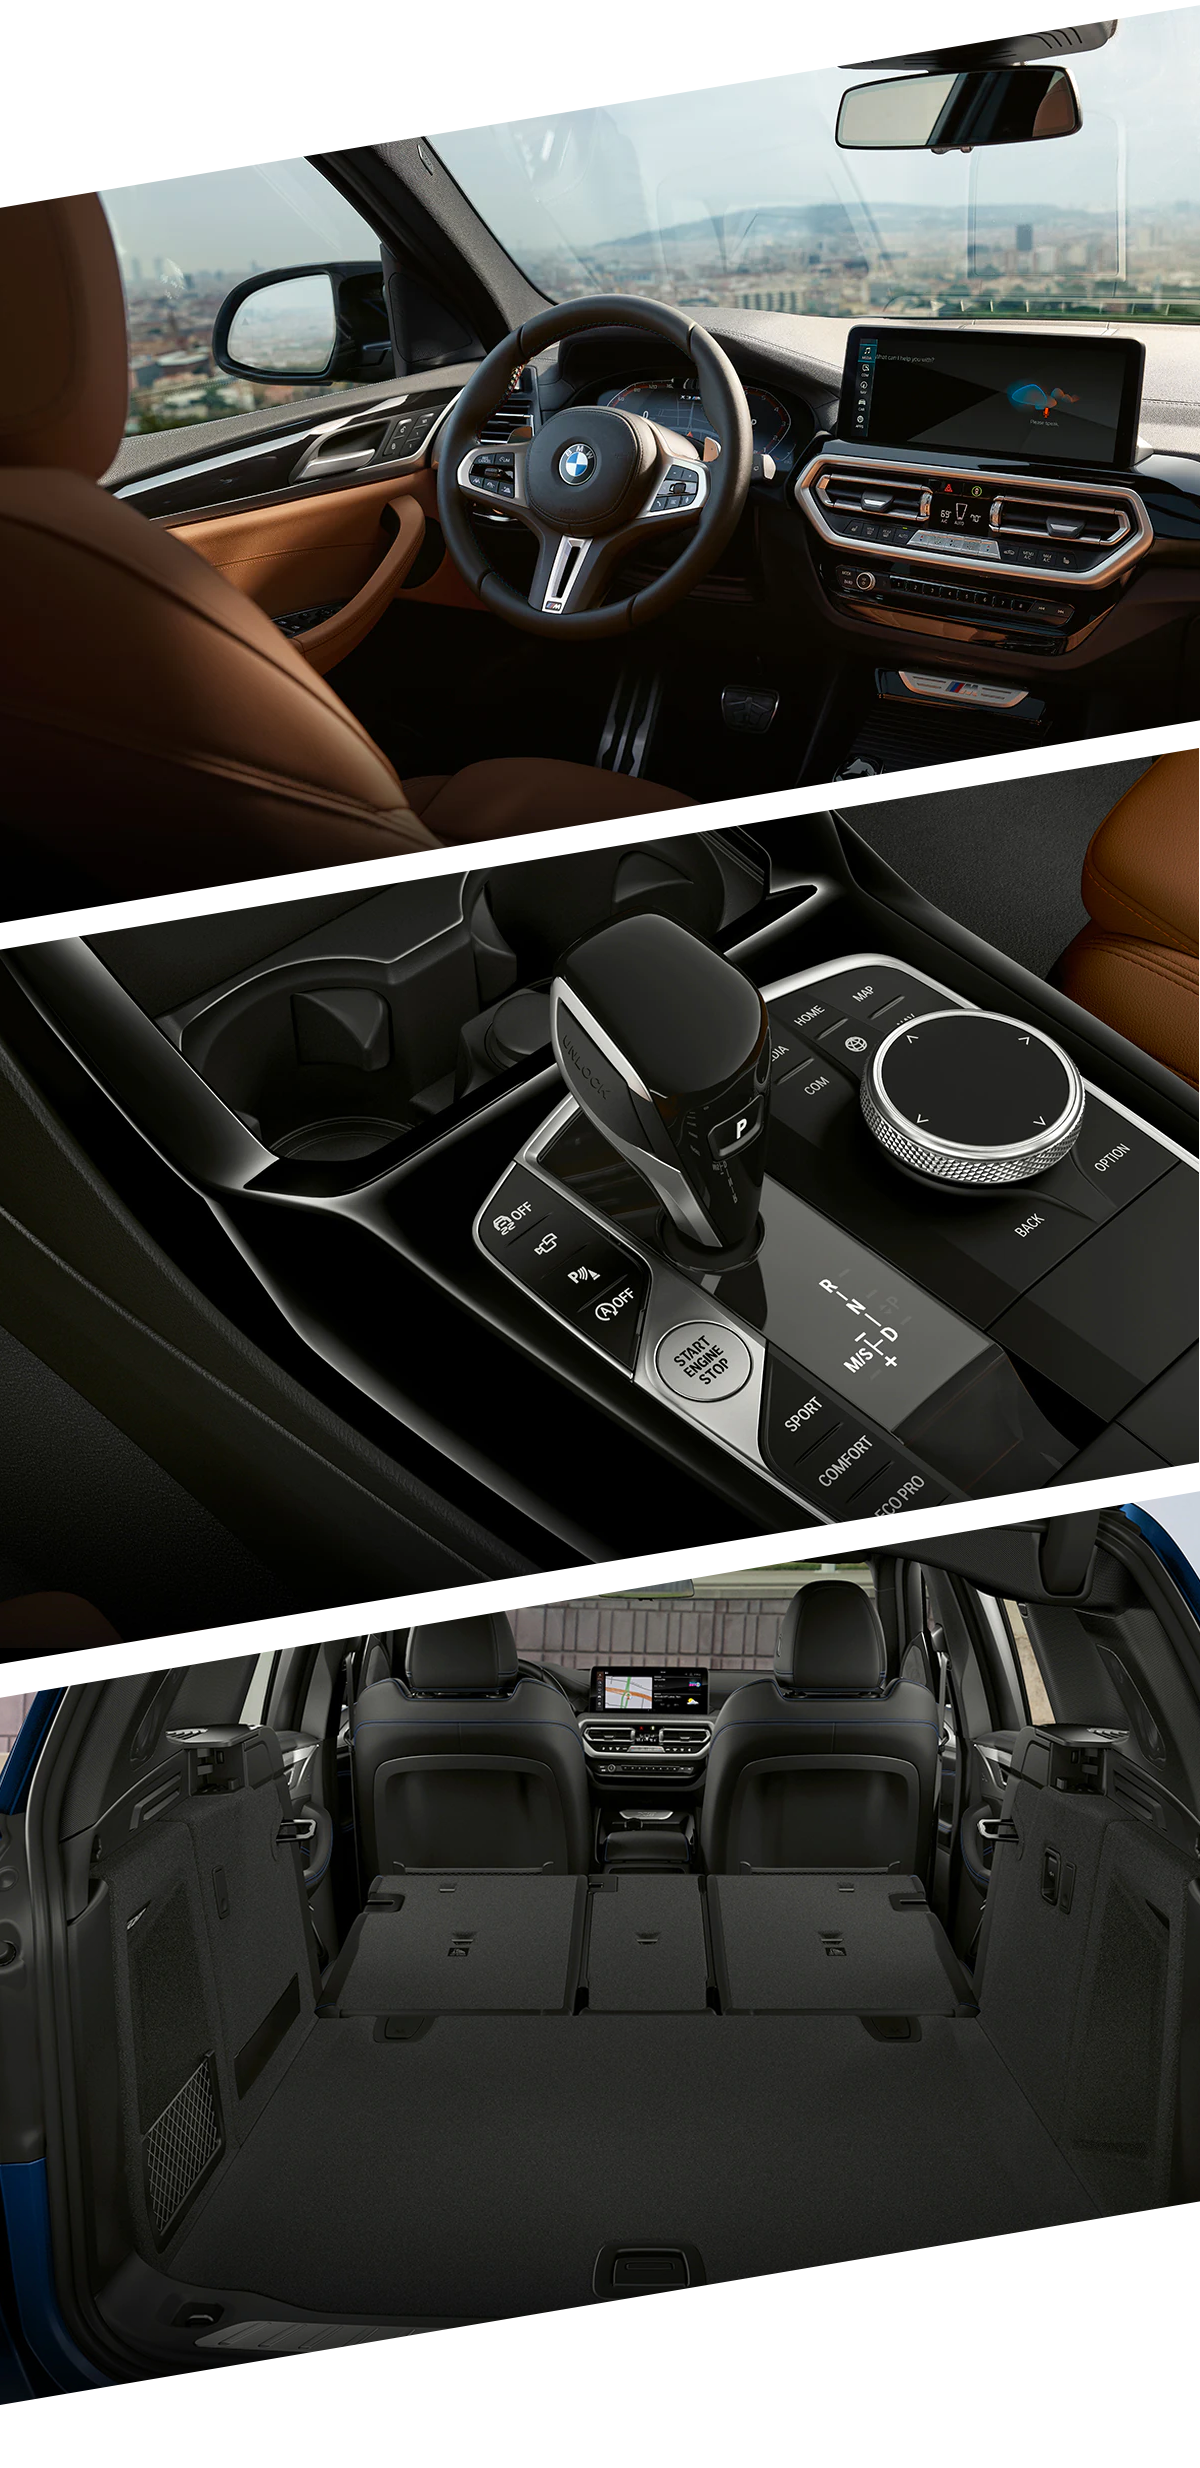 2021 BMW X3 Interior Images